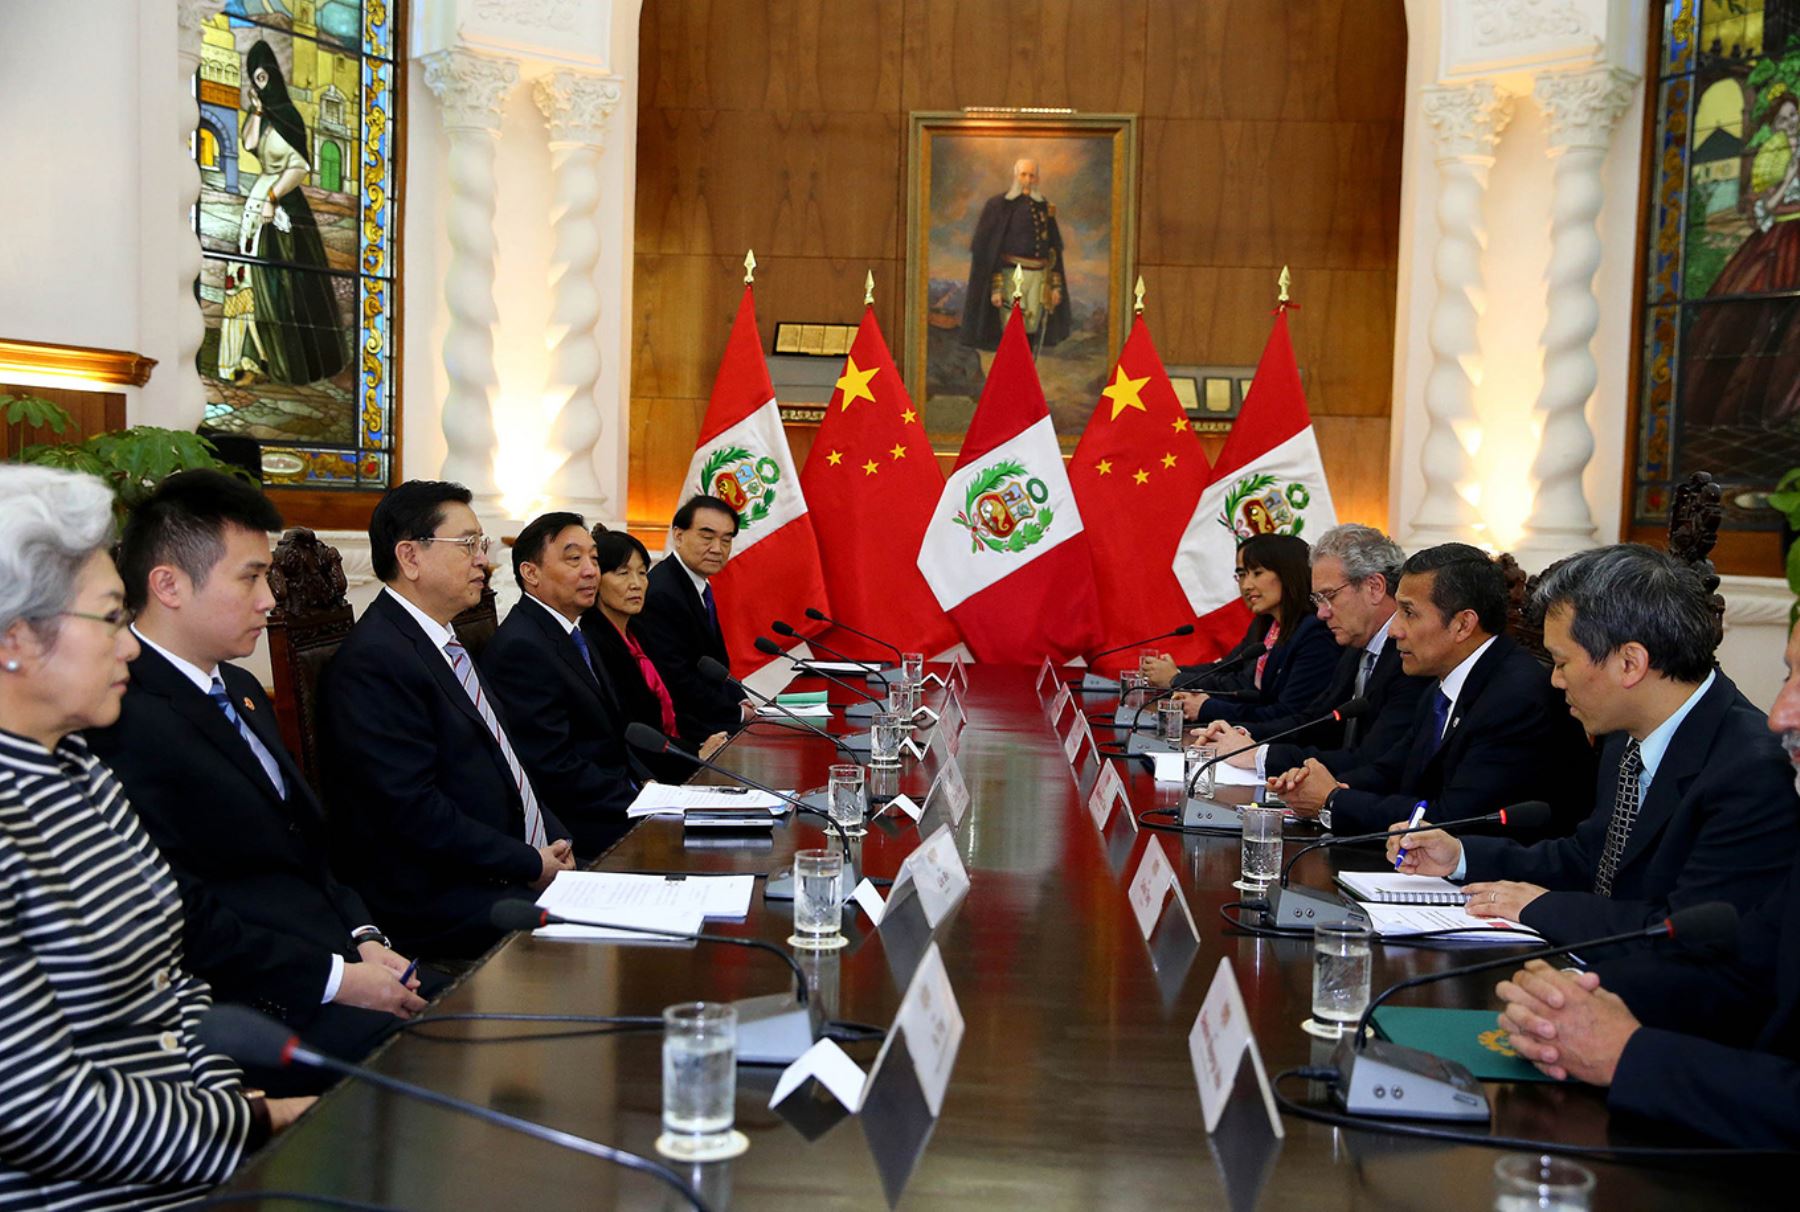 Presidente de la República, Ollanta Humala Tasso, recibió en audiencia al Presidente de la Asamblea Popular Nacional de China, Zhang Dejiang, en Palacio de Gobierno